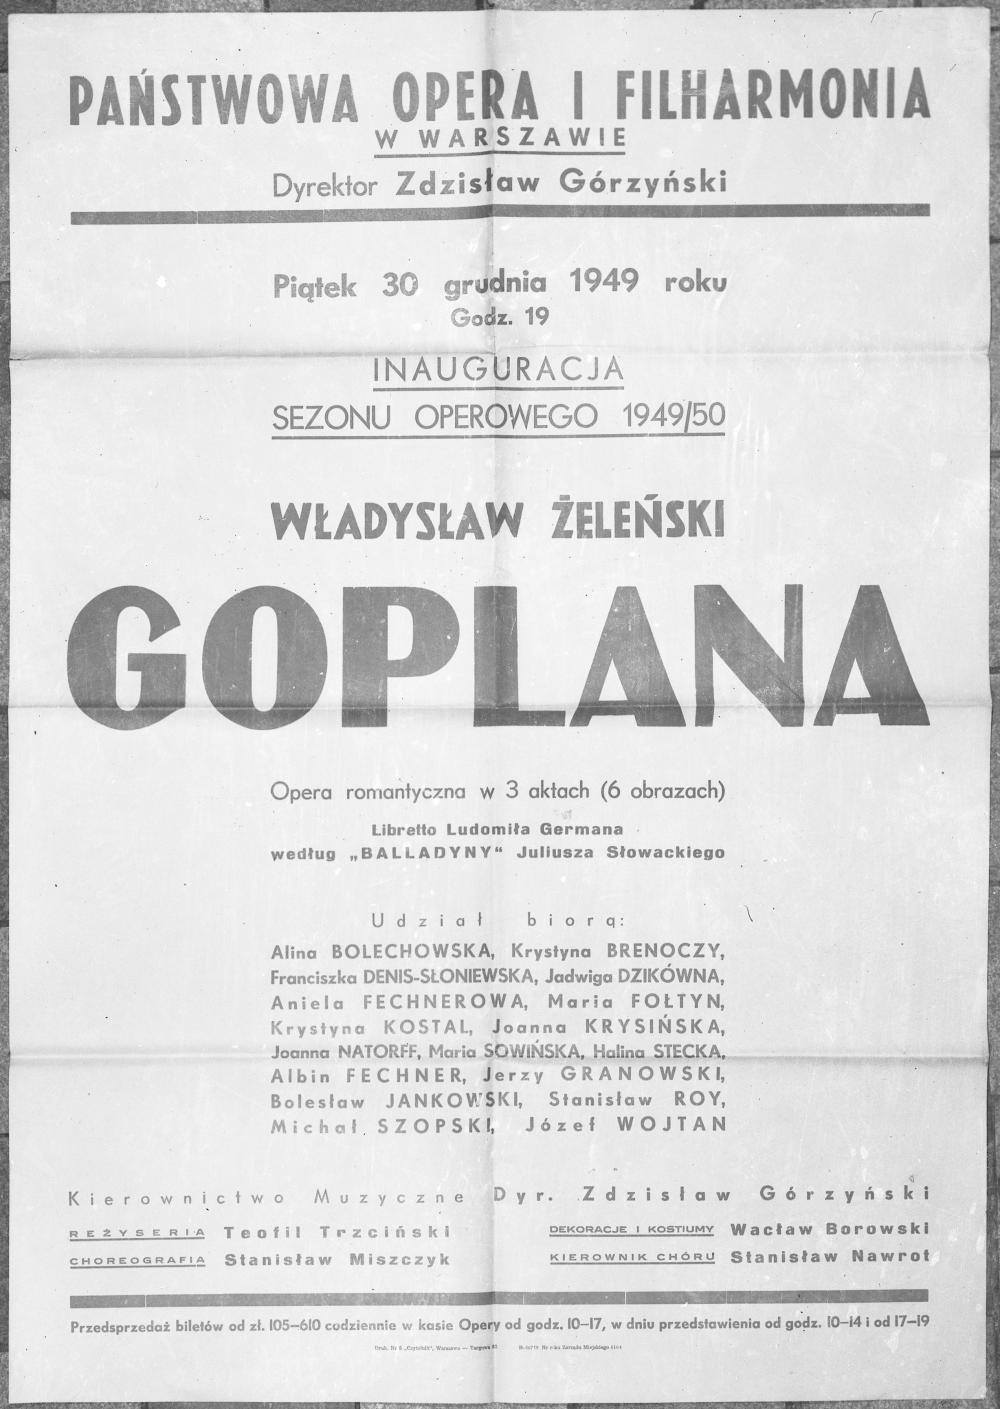 Fotokopia afisza. ,,Goplana" Władysław Żeleński 30-12-1949. Inauguracja sezonu operowego 1949/1950 w Państwowej Operze i Filharmoni w Warszawie